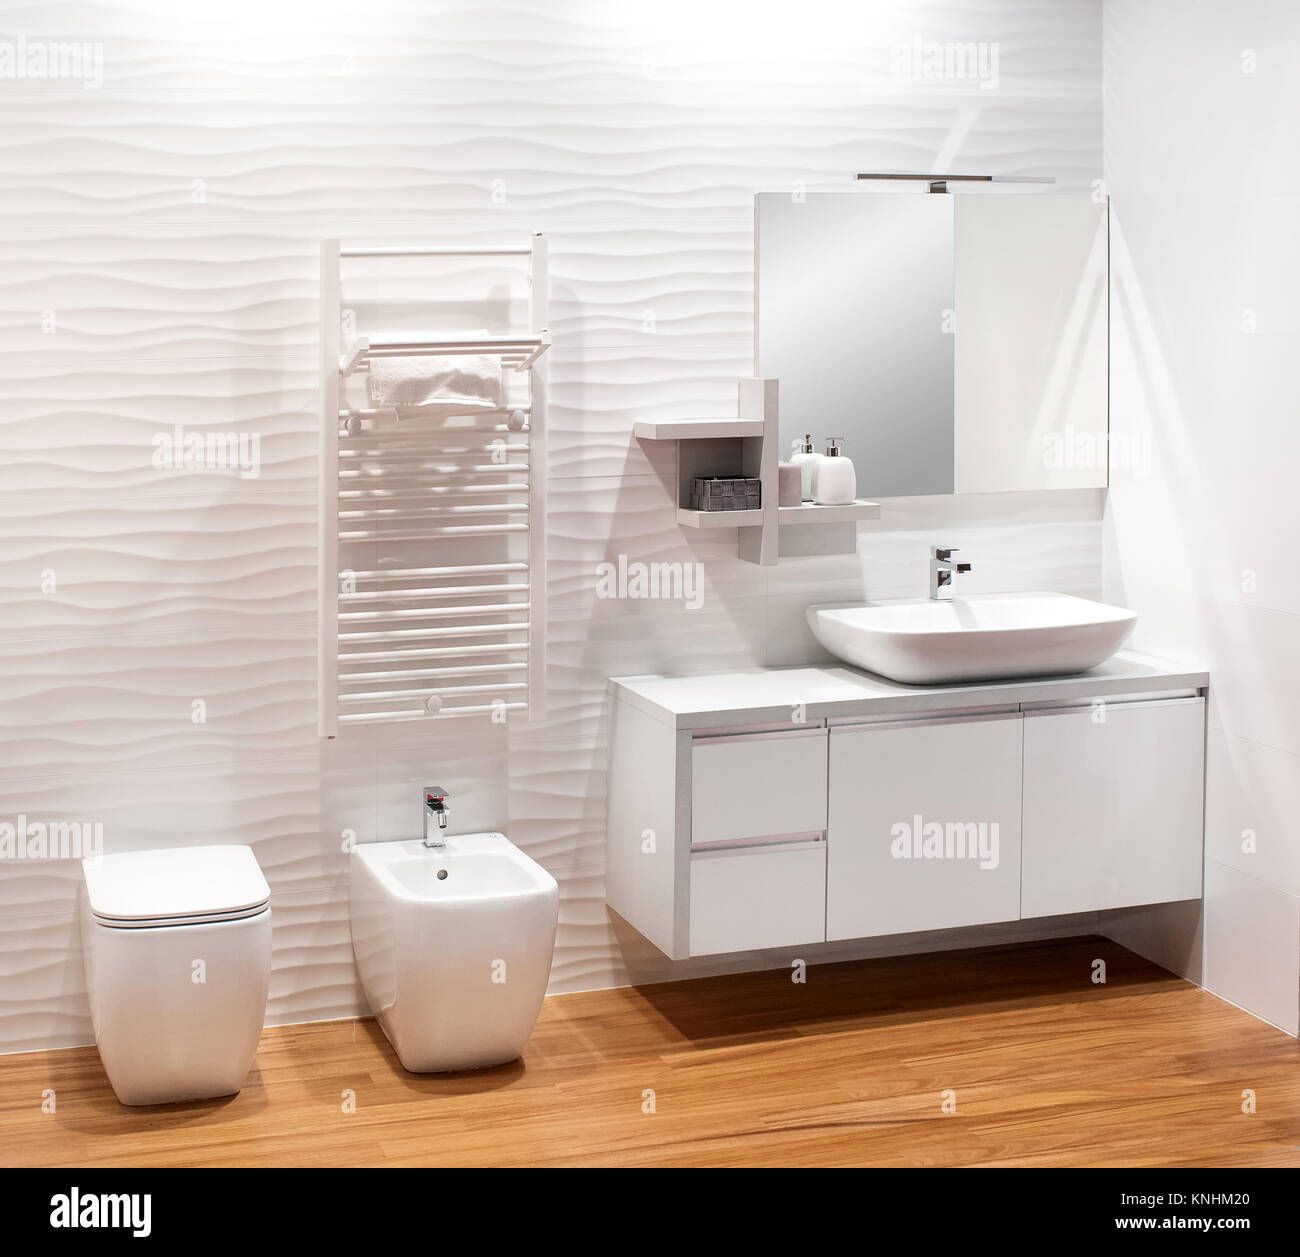 Monocromatica semplice bagno bianco con semplice mobile vanity, bidet e wc su un pavimento in legno naturale Foto Stock